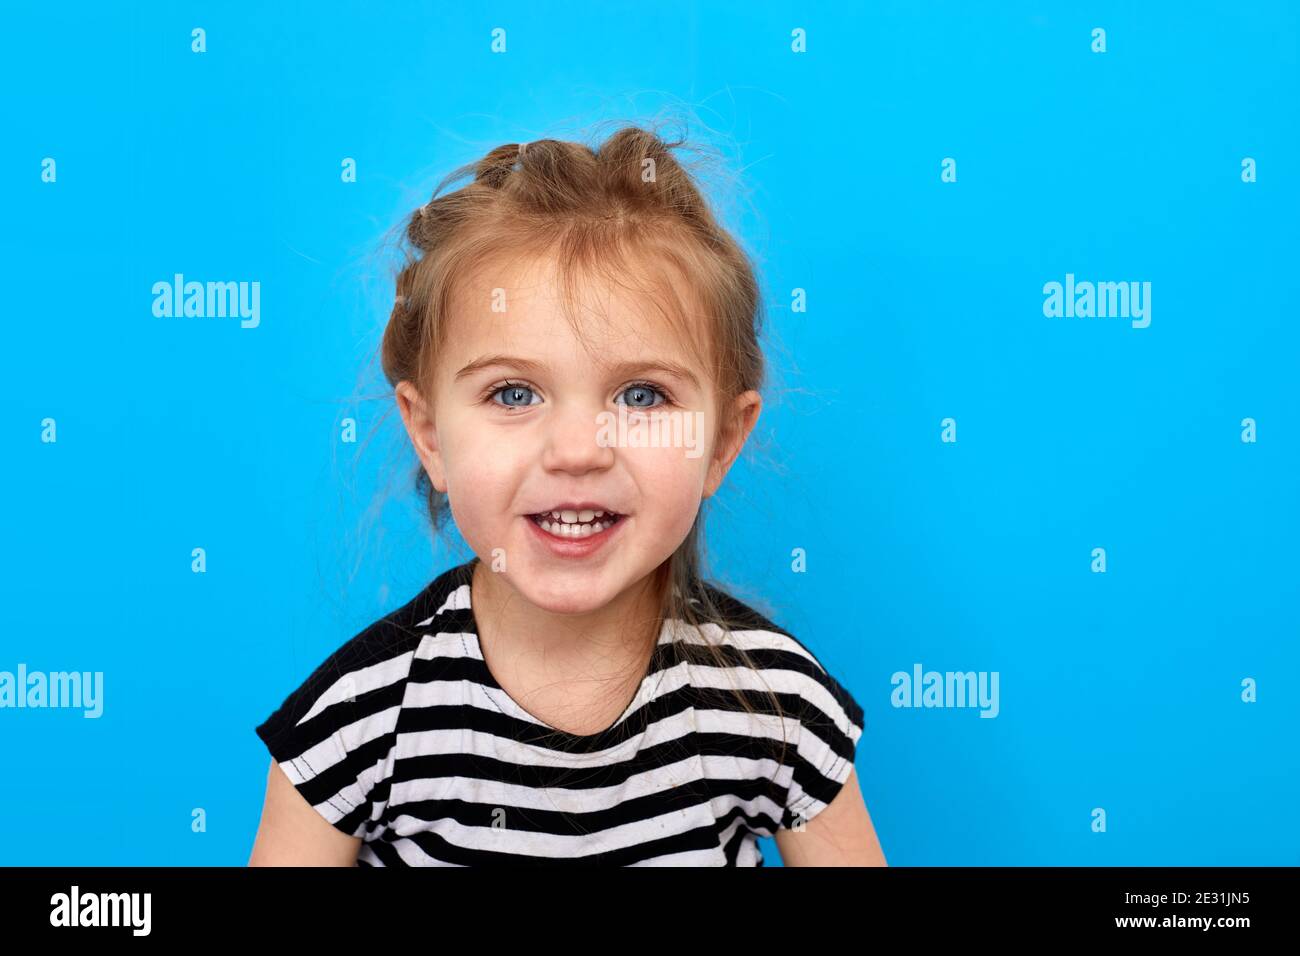 Gros plan studio photo d'une jolie petite fille en t-shirt posant sur un fond bleu. Regarde l'appareil photo et sourit Banque D'Images